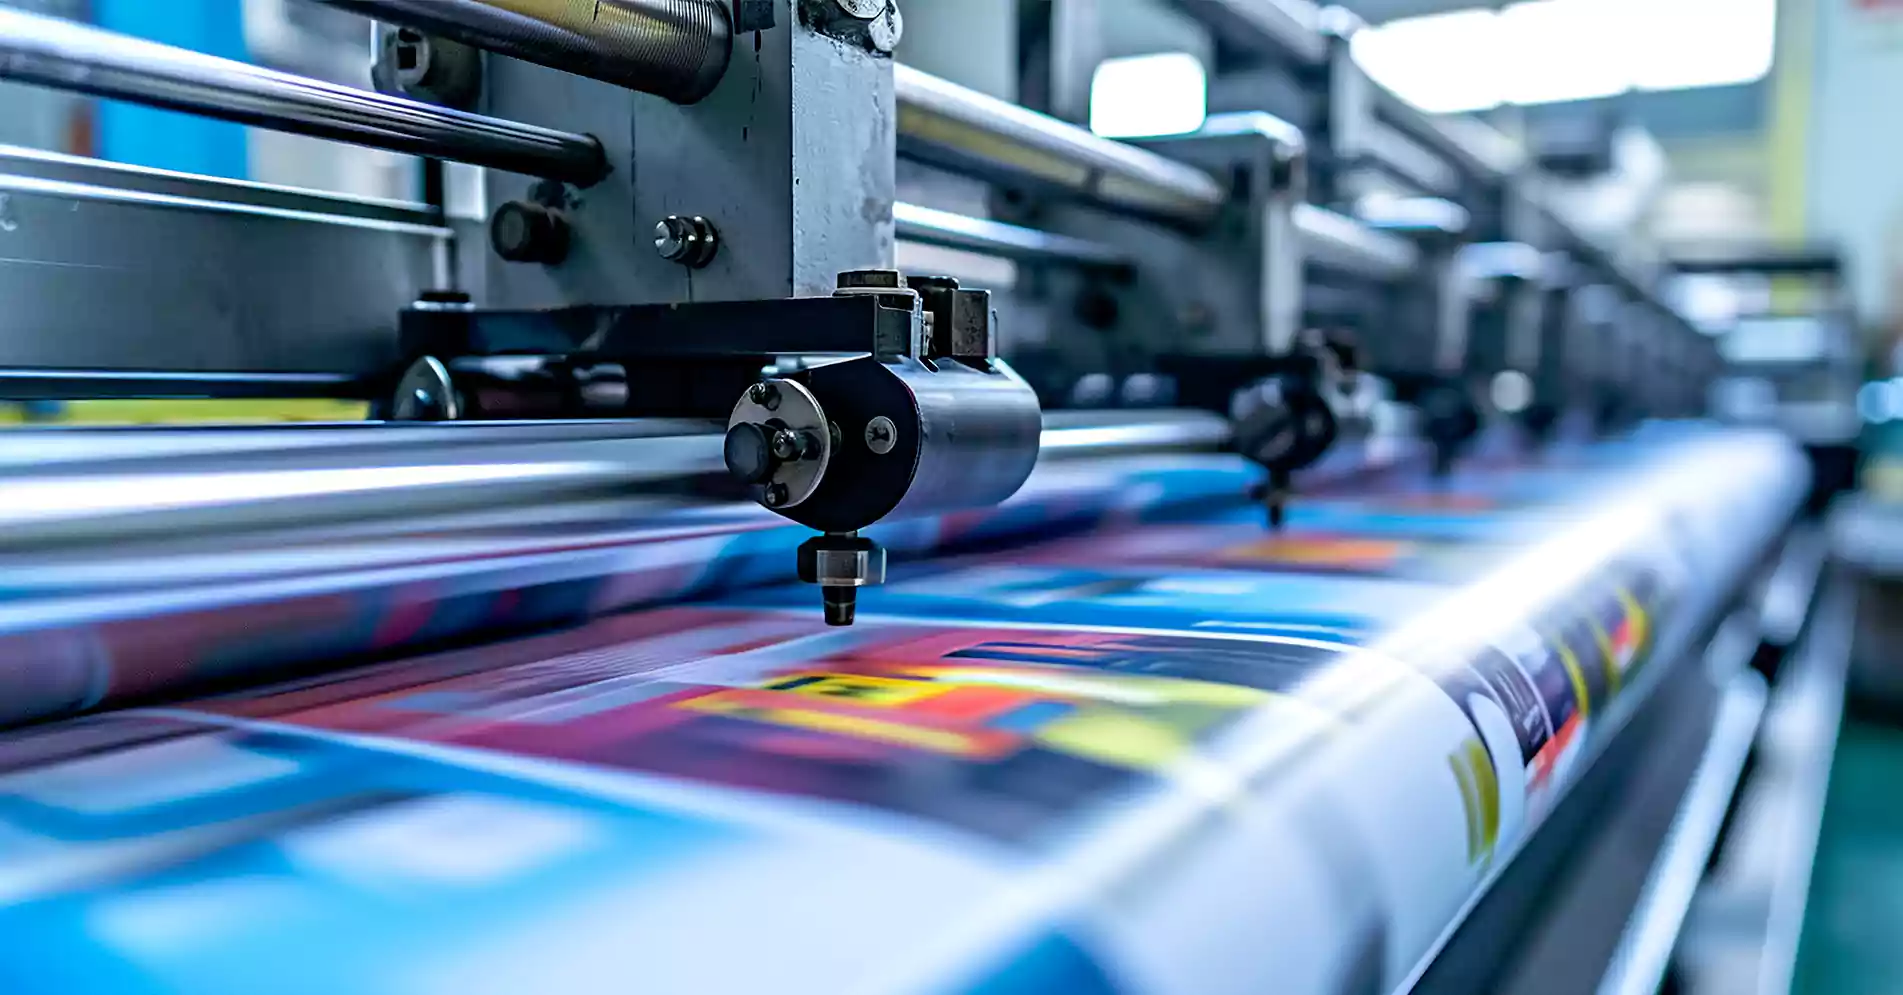 ทีมงานและอุปกรณ์การพิมพ์มืออาชีพที่ผลิตเองจากโรงงาน